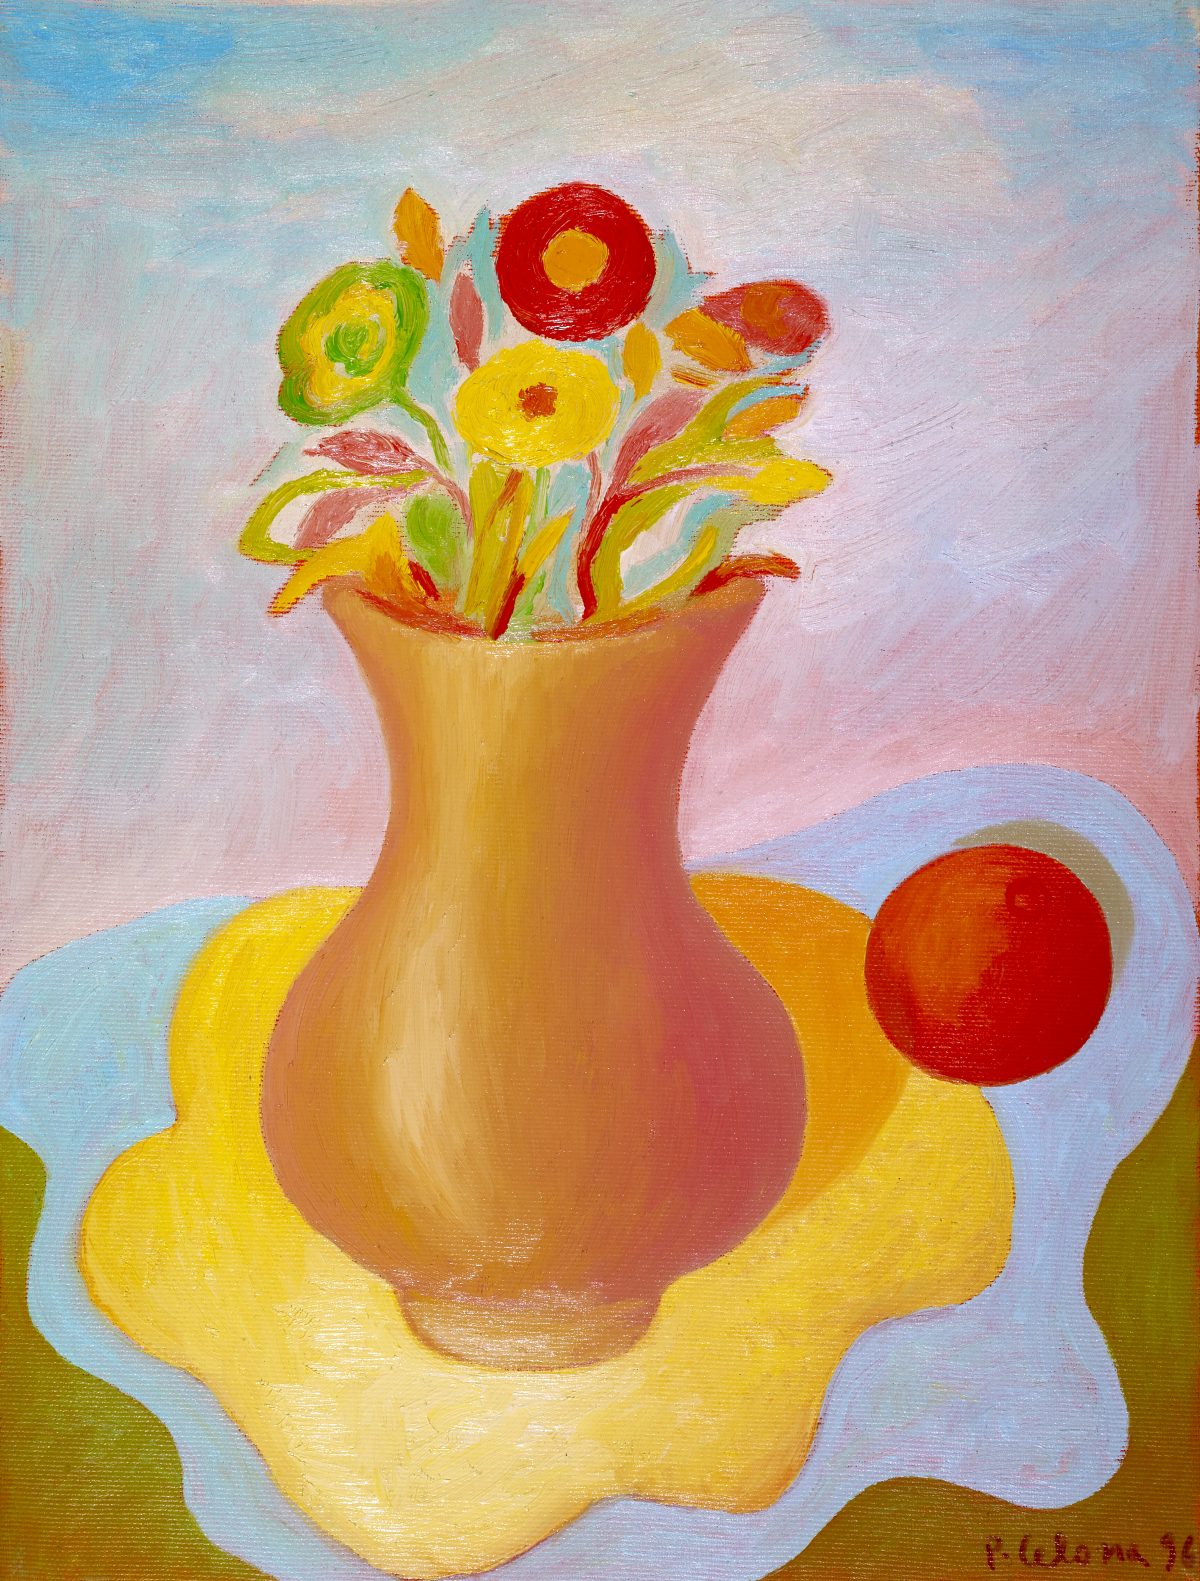 Vaso con fiori e arancia, 1996
Olio su tela, 50 x 40 cm,
Collezione privata,
NMV300